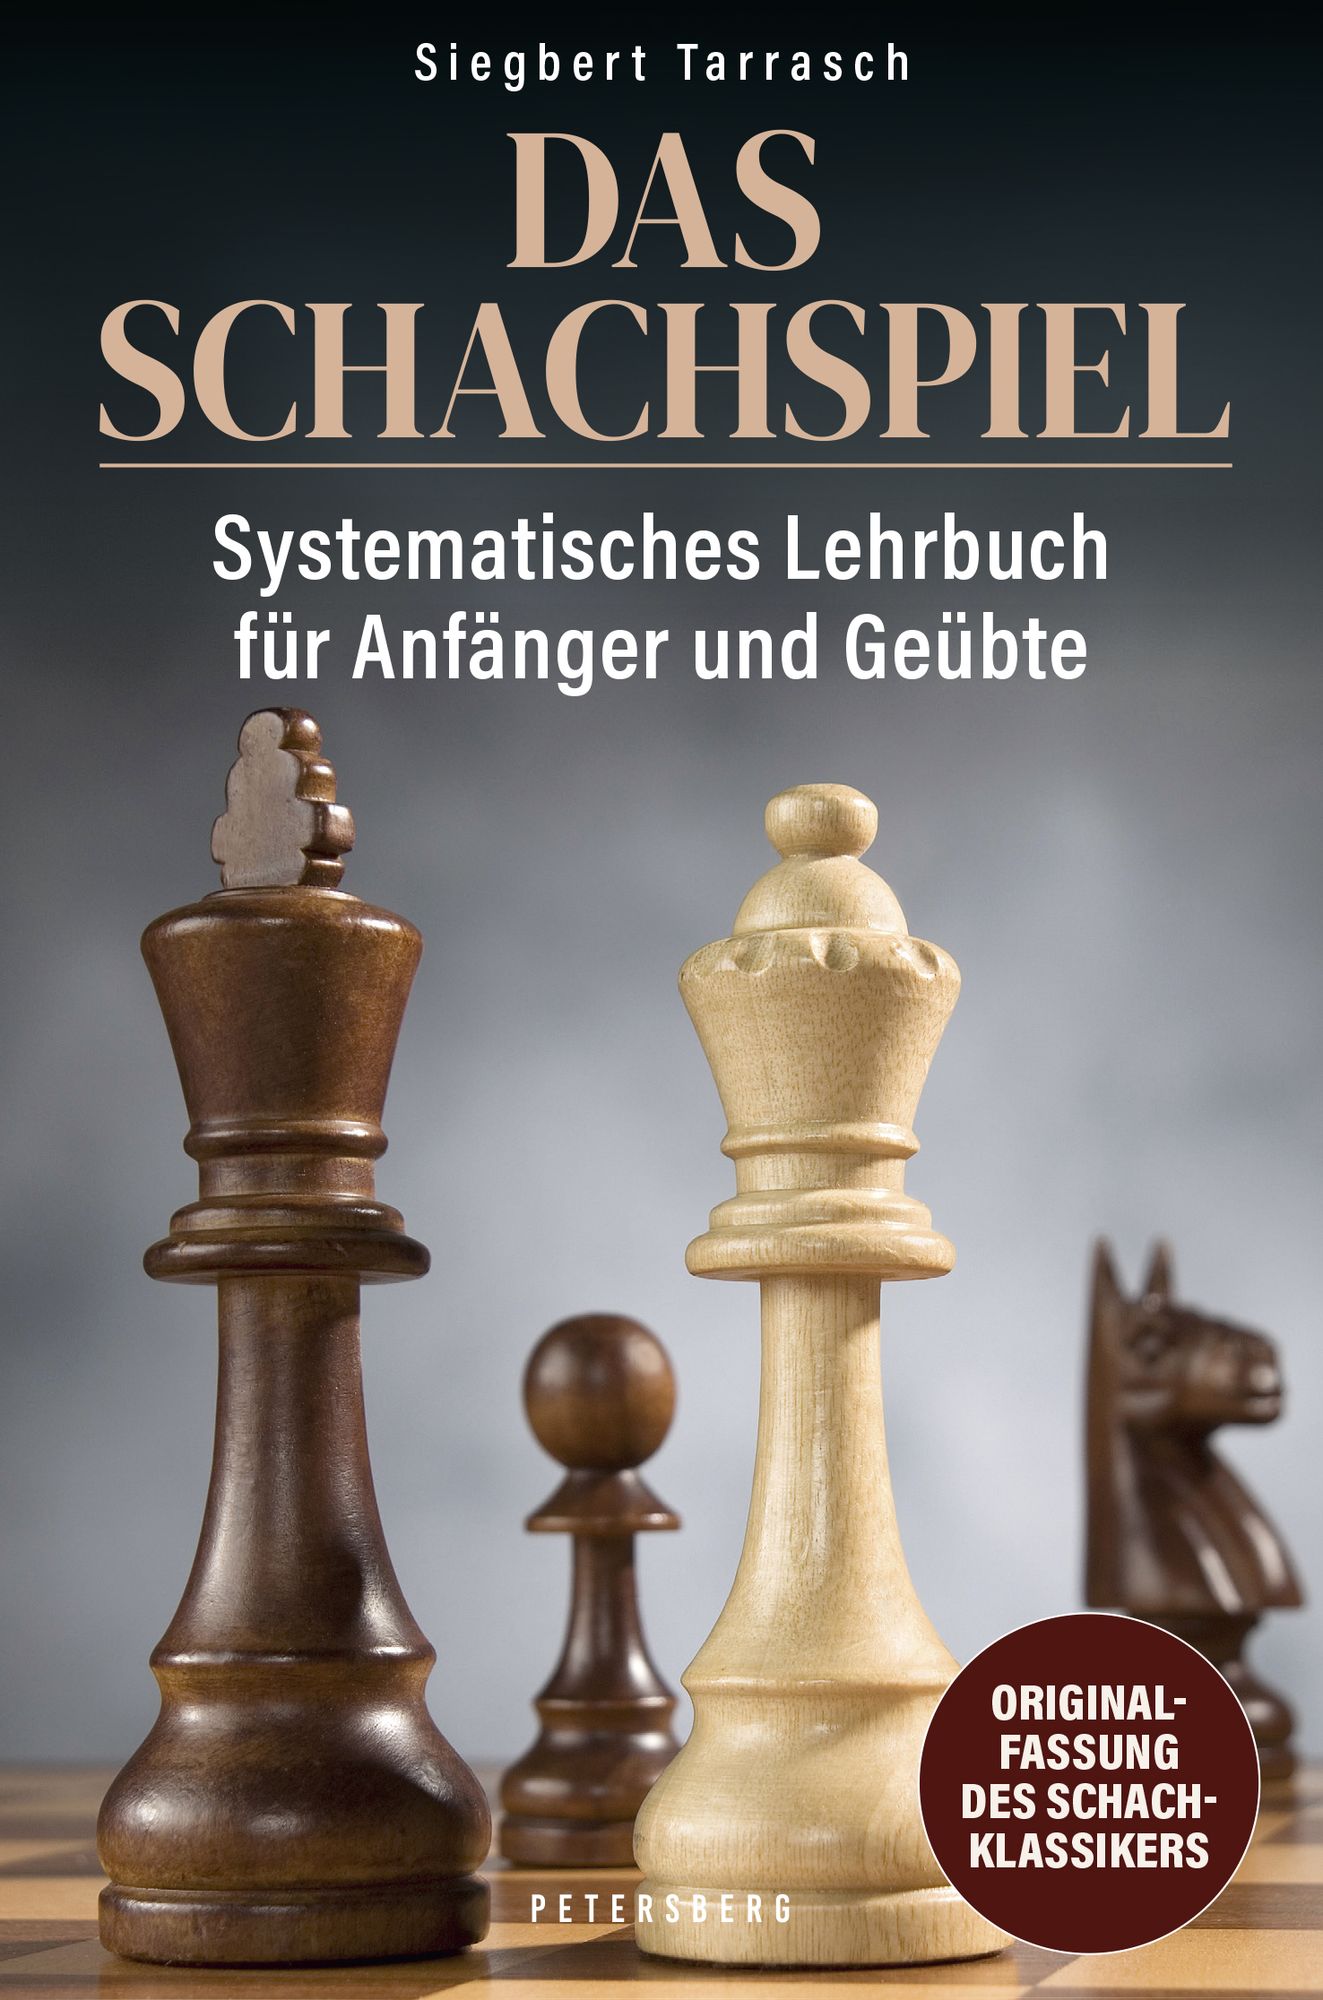 Das Schachspiel von Siegbert Tarrasch - Buch